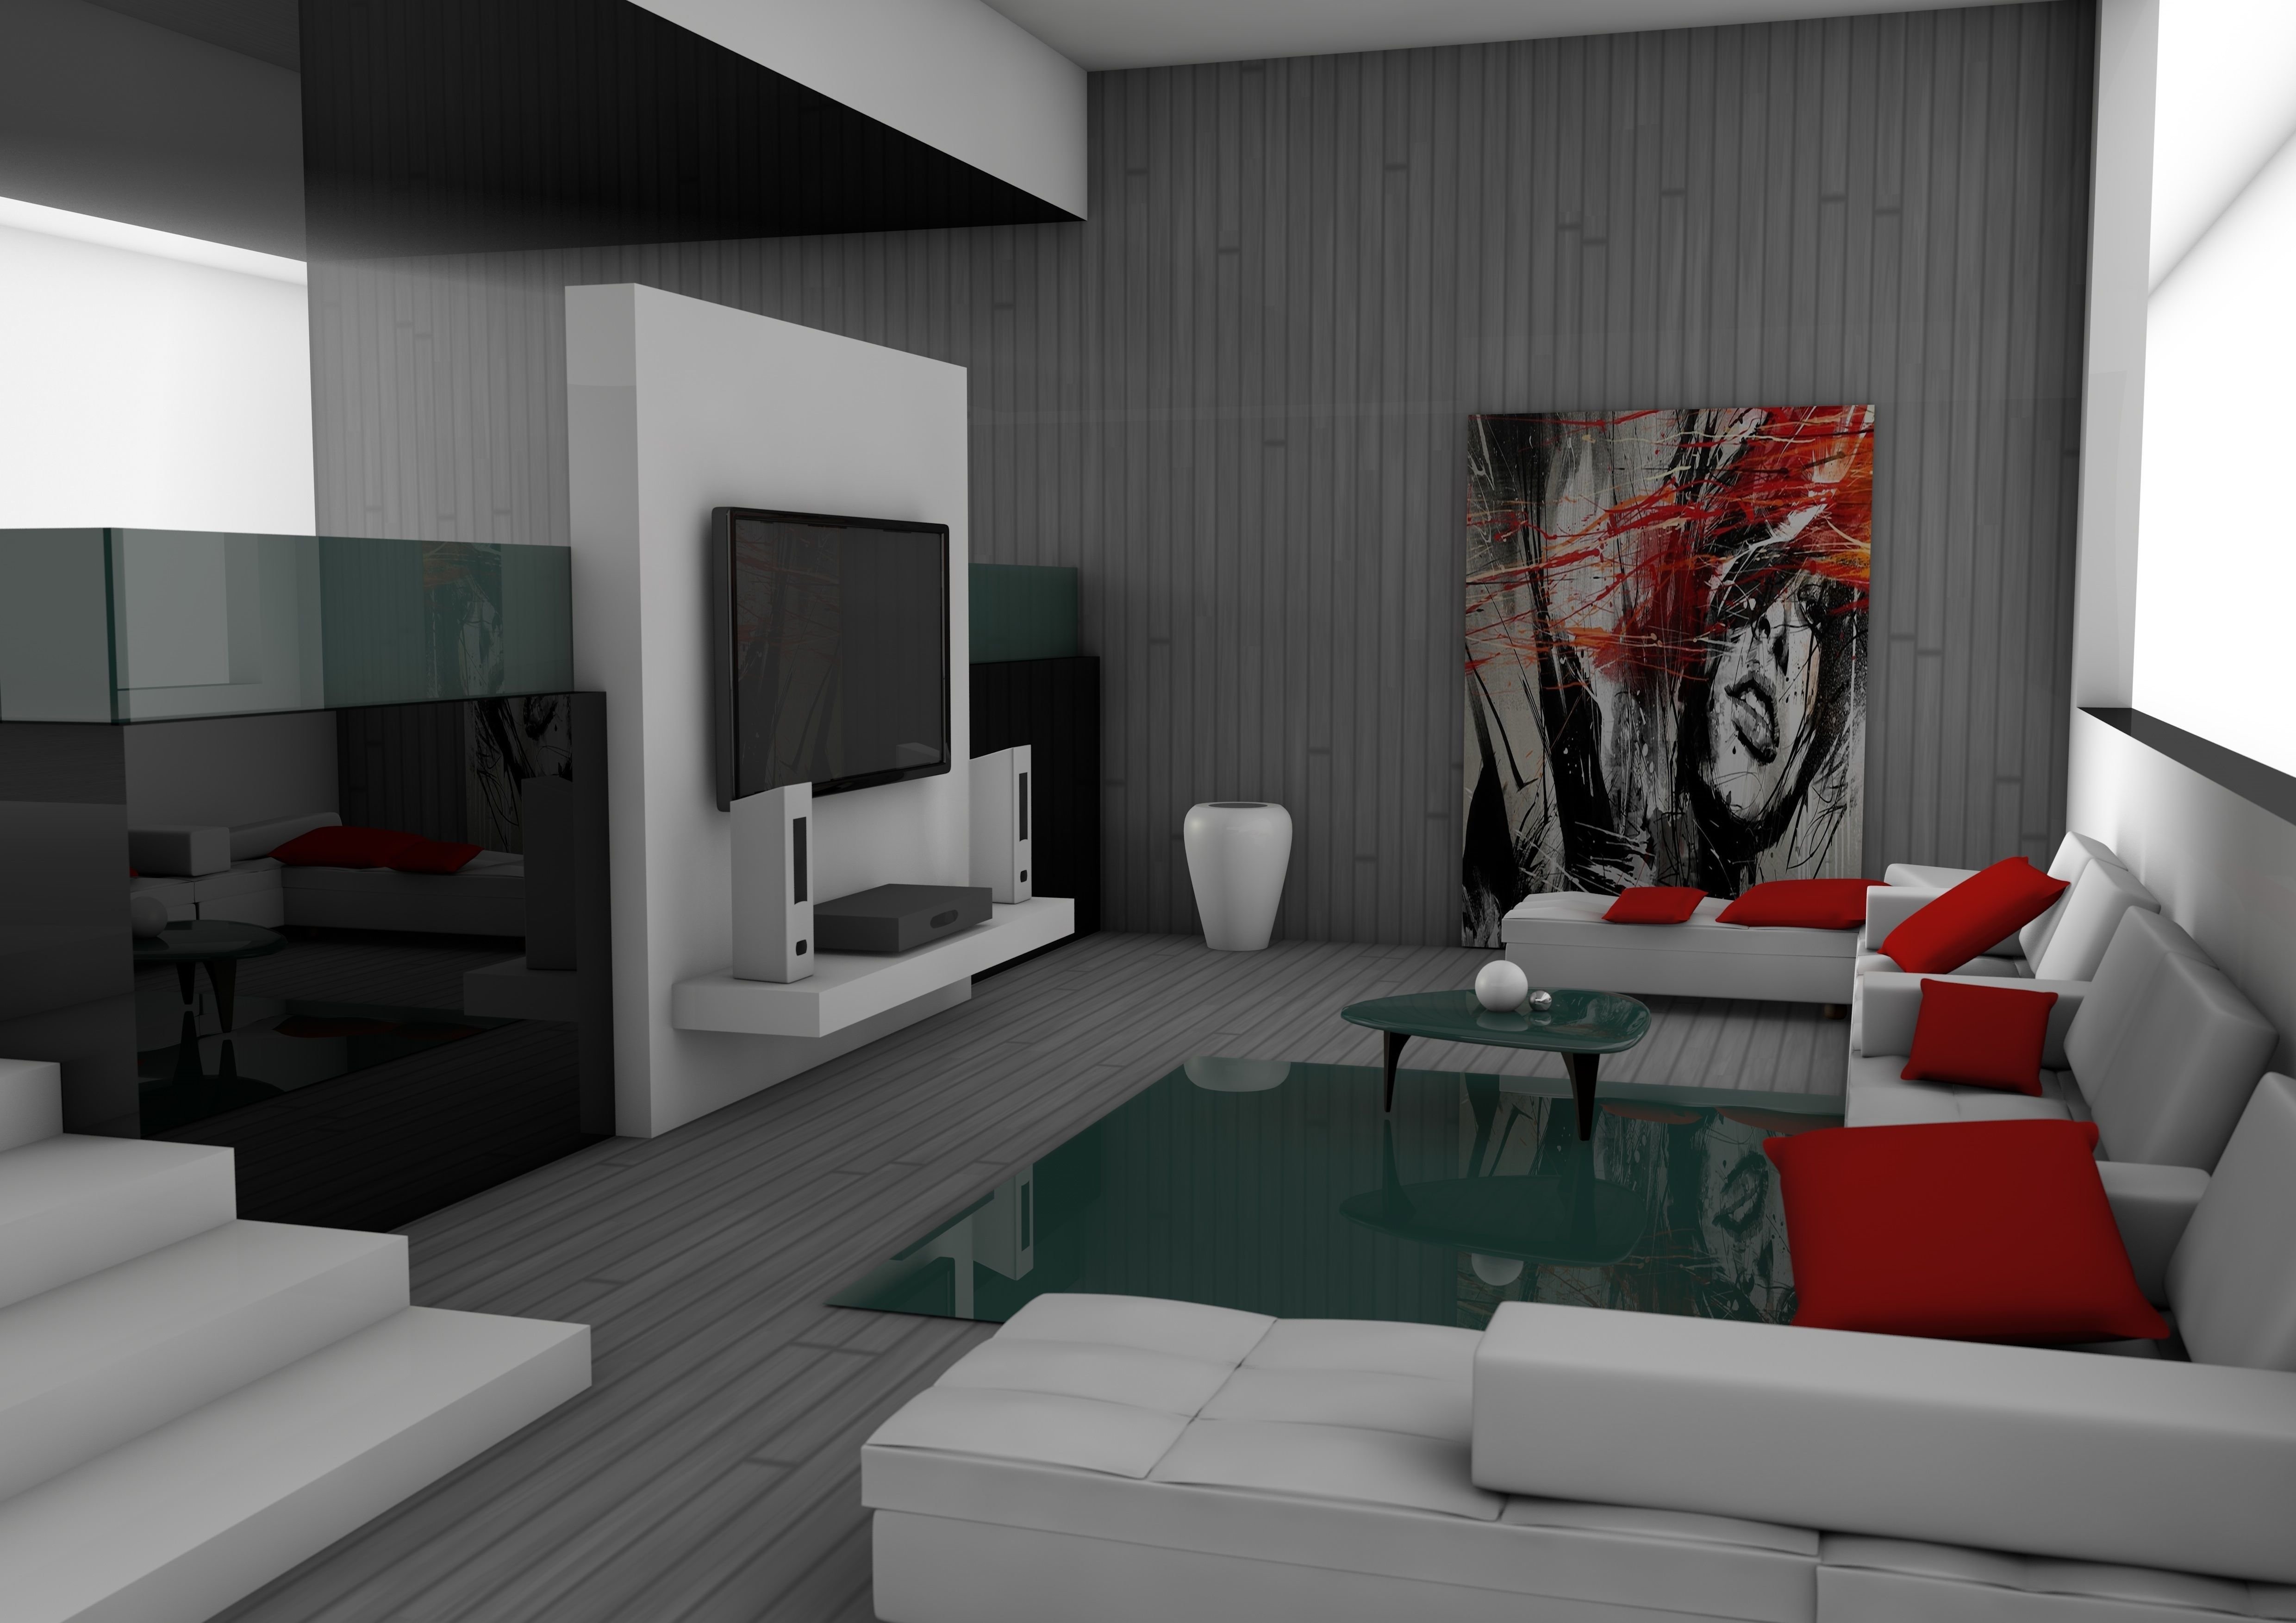 Скопировать дизайн. Визуализация в 3ds Max. Interyer 3d Max Bedroom. Визуализация интерьера. Моделирование интерьера.